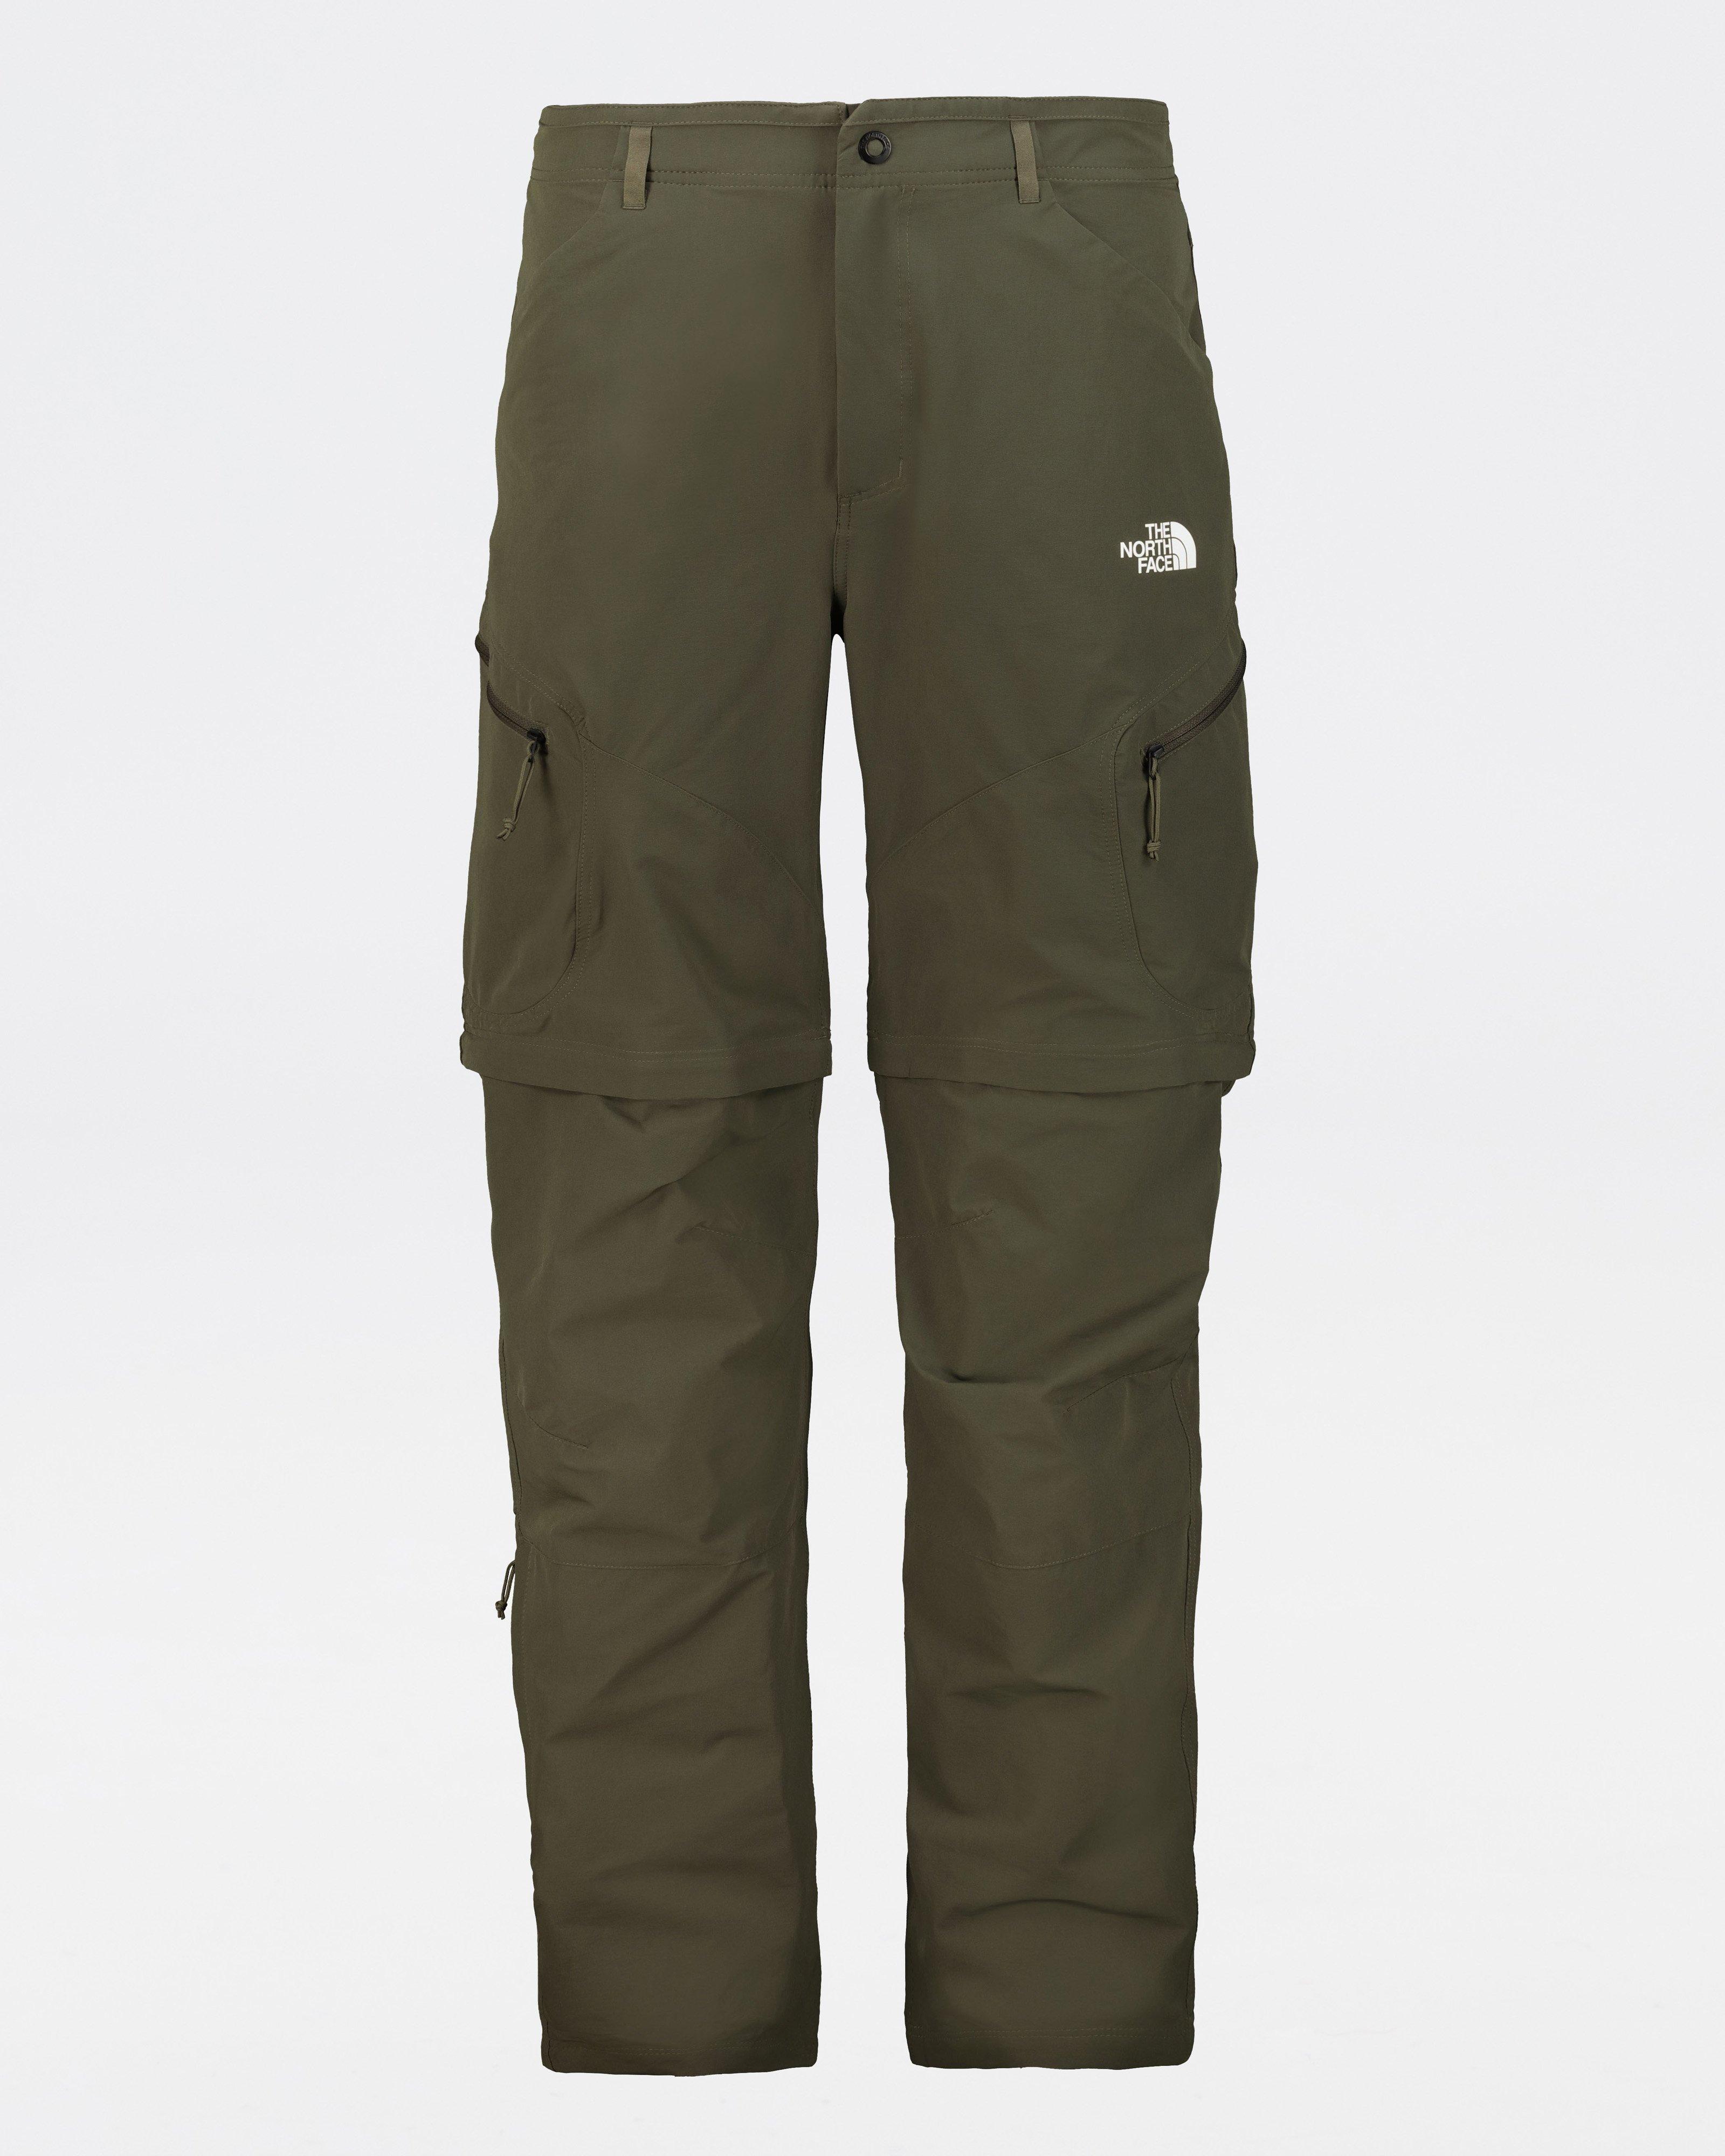 Unisex Pants  Mens Outdoor Zipper Sports Trousers - KSHM - Unisex